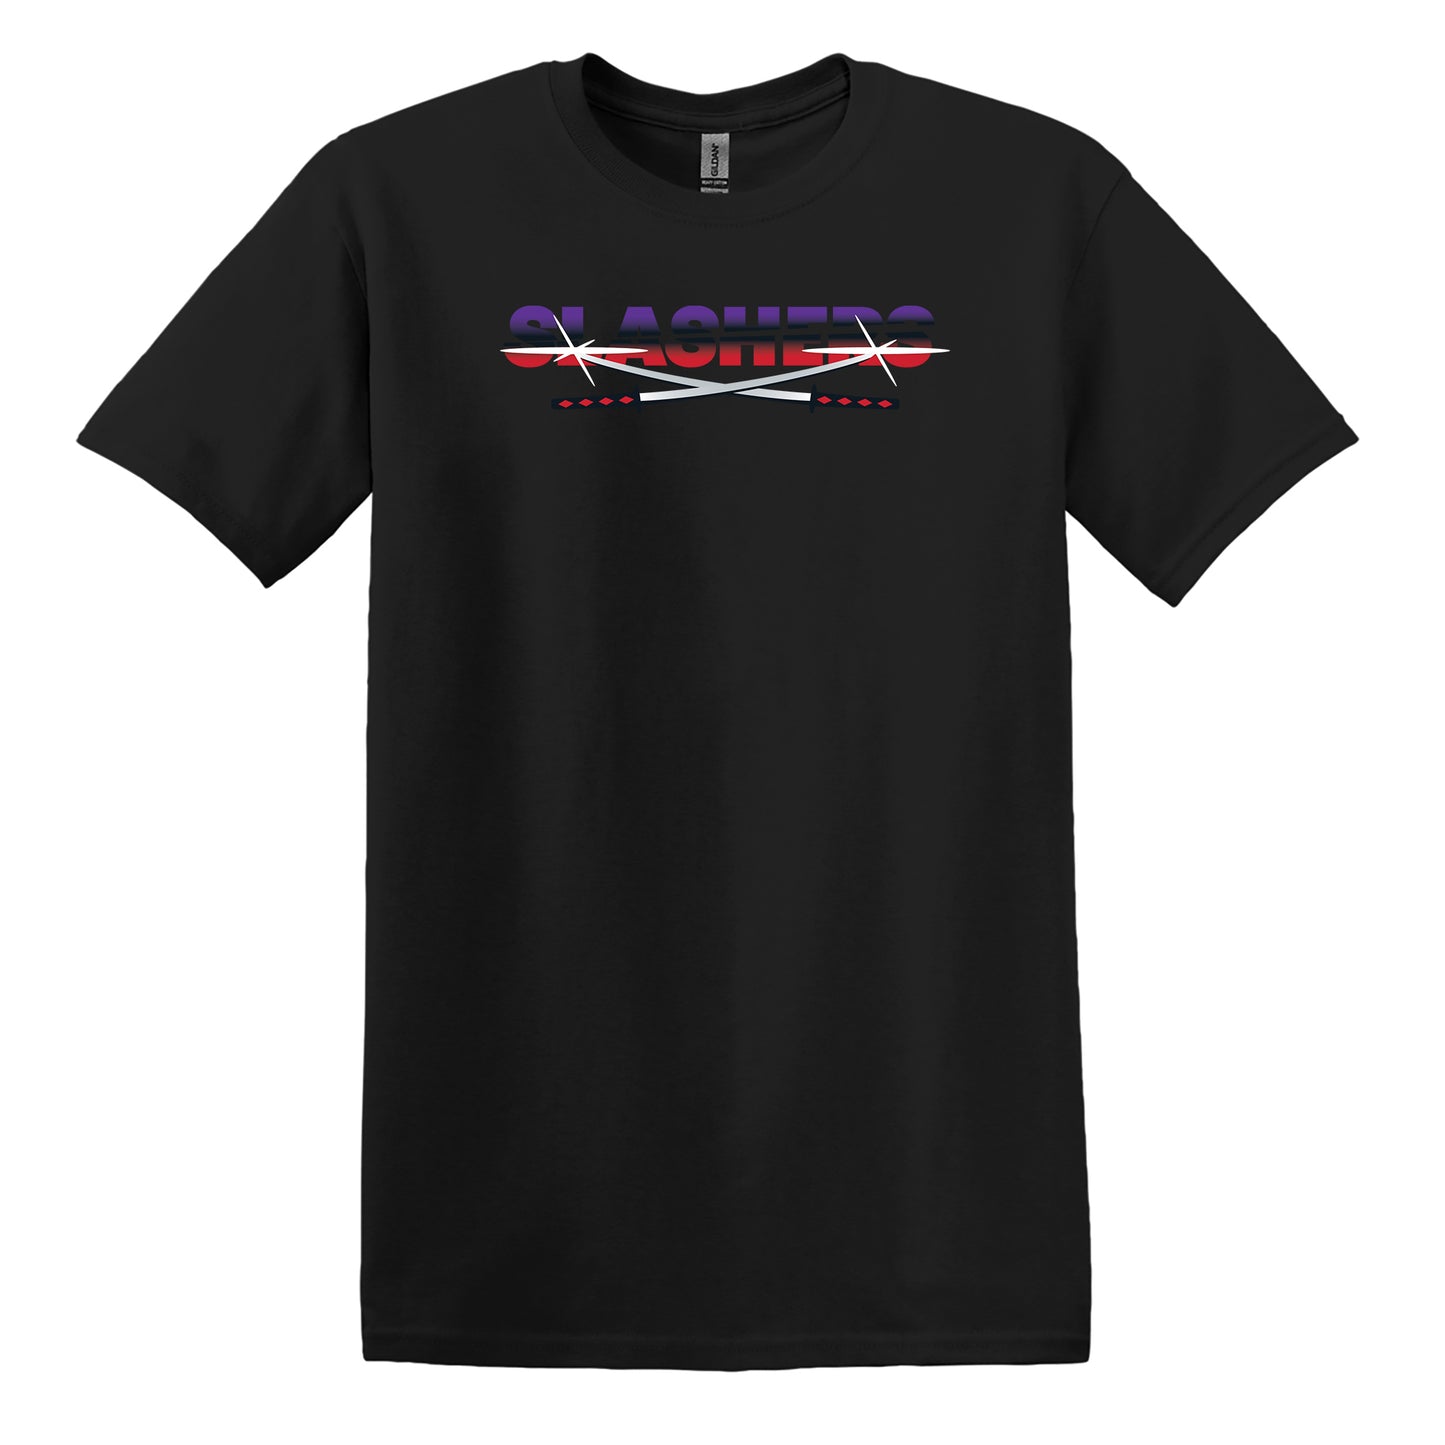 SLASHERS - Team T-Shirt - Black